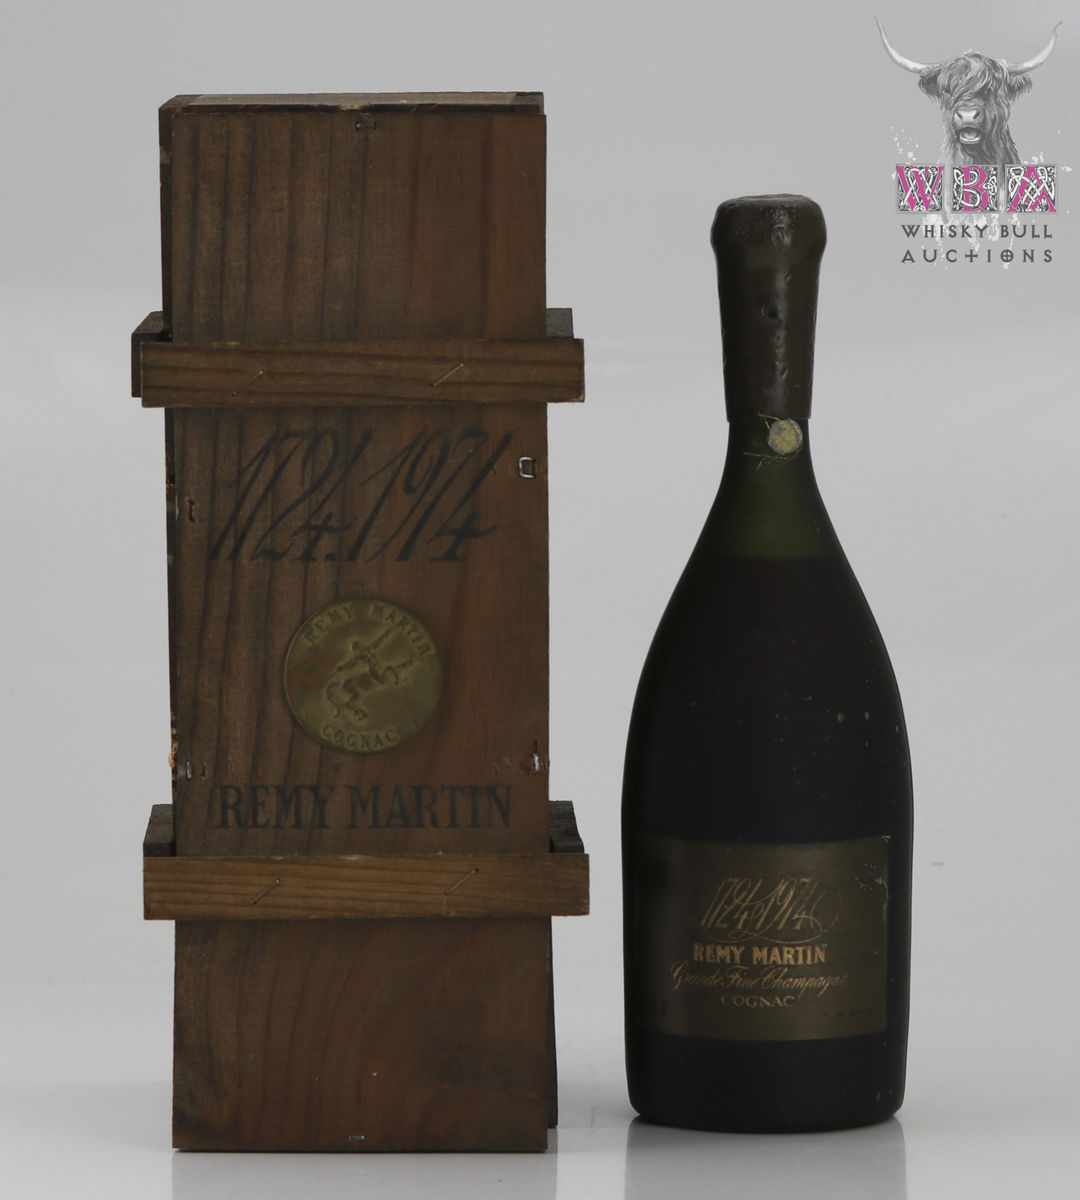 Remy Martin 1724-1974 250th Anniversary Grand Fine Champagne 